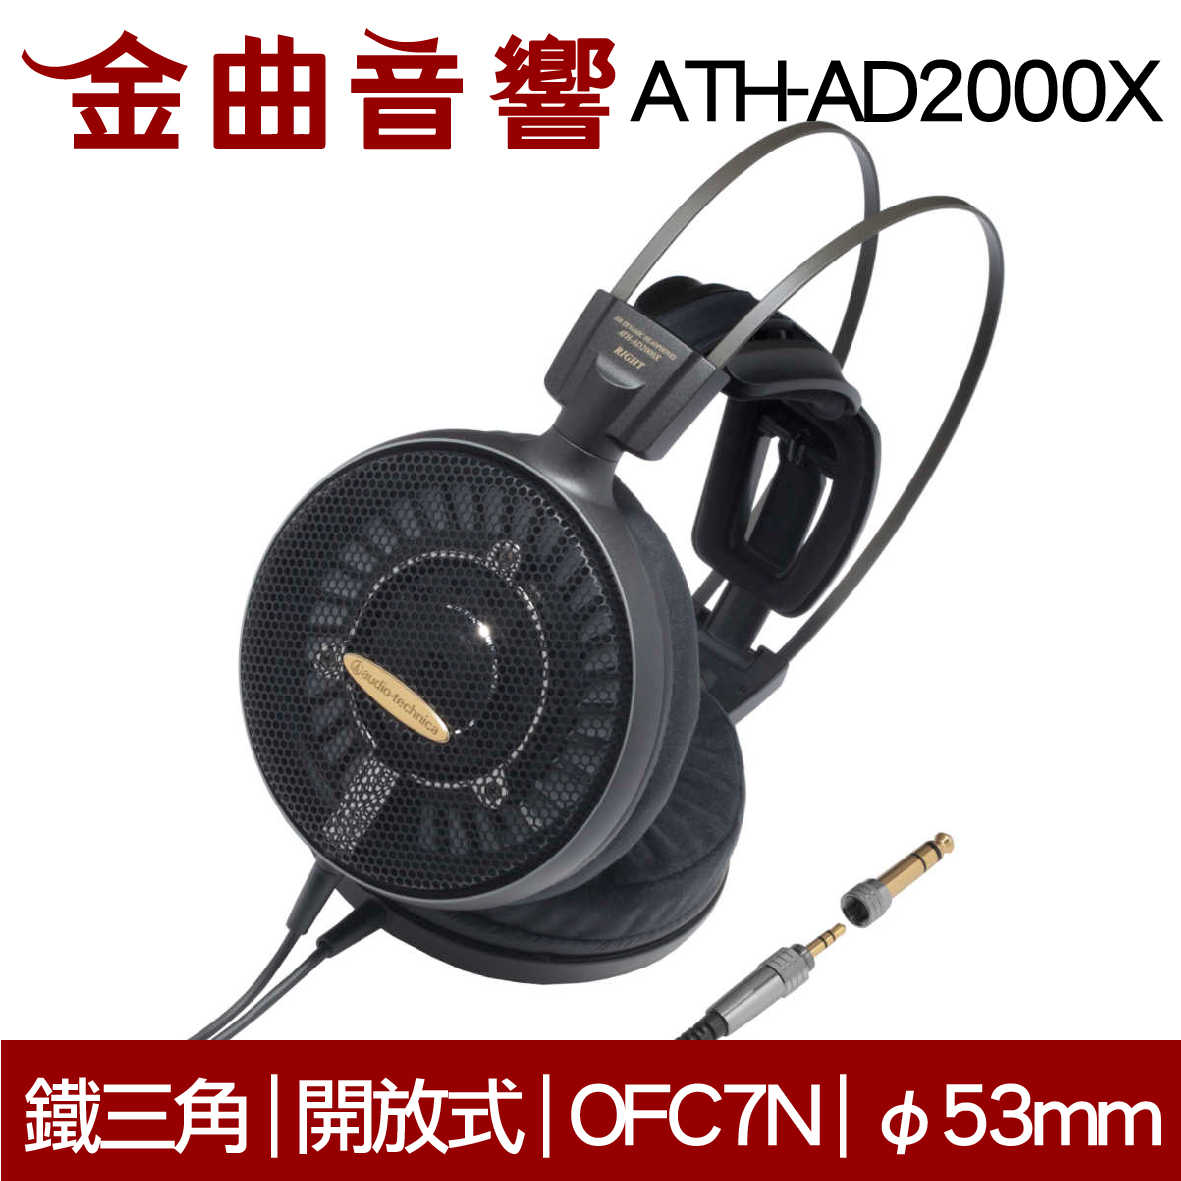 鐵三角 ATH-AD2000X 開放式 耳罩式耳機 | 金曲音響